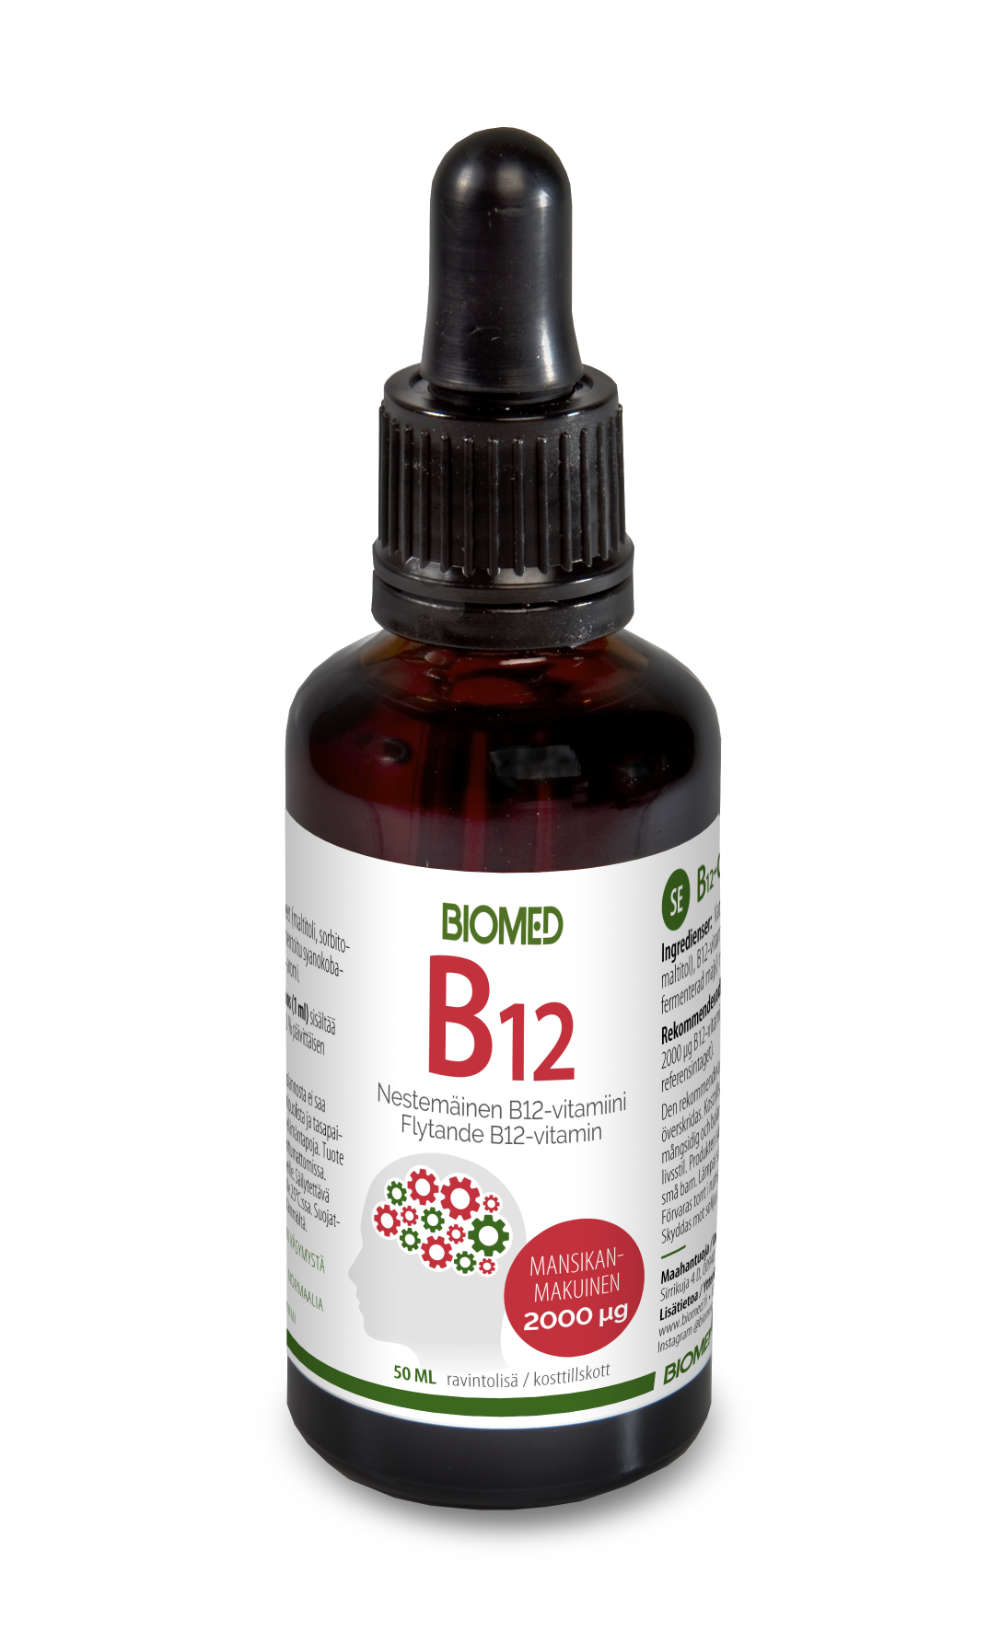 Biomed B12-vitamiini, mansikanmakuinen